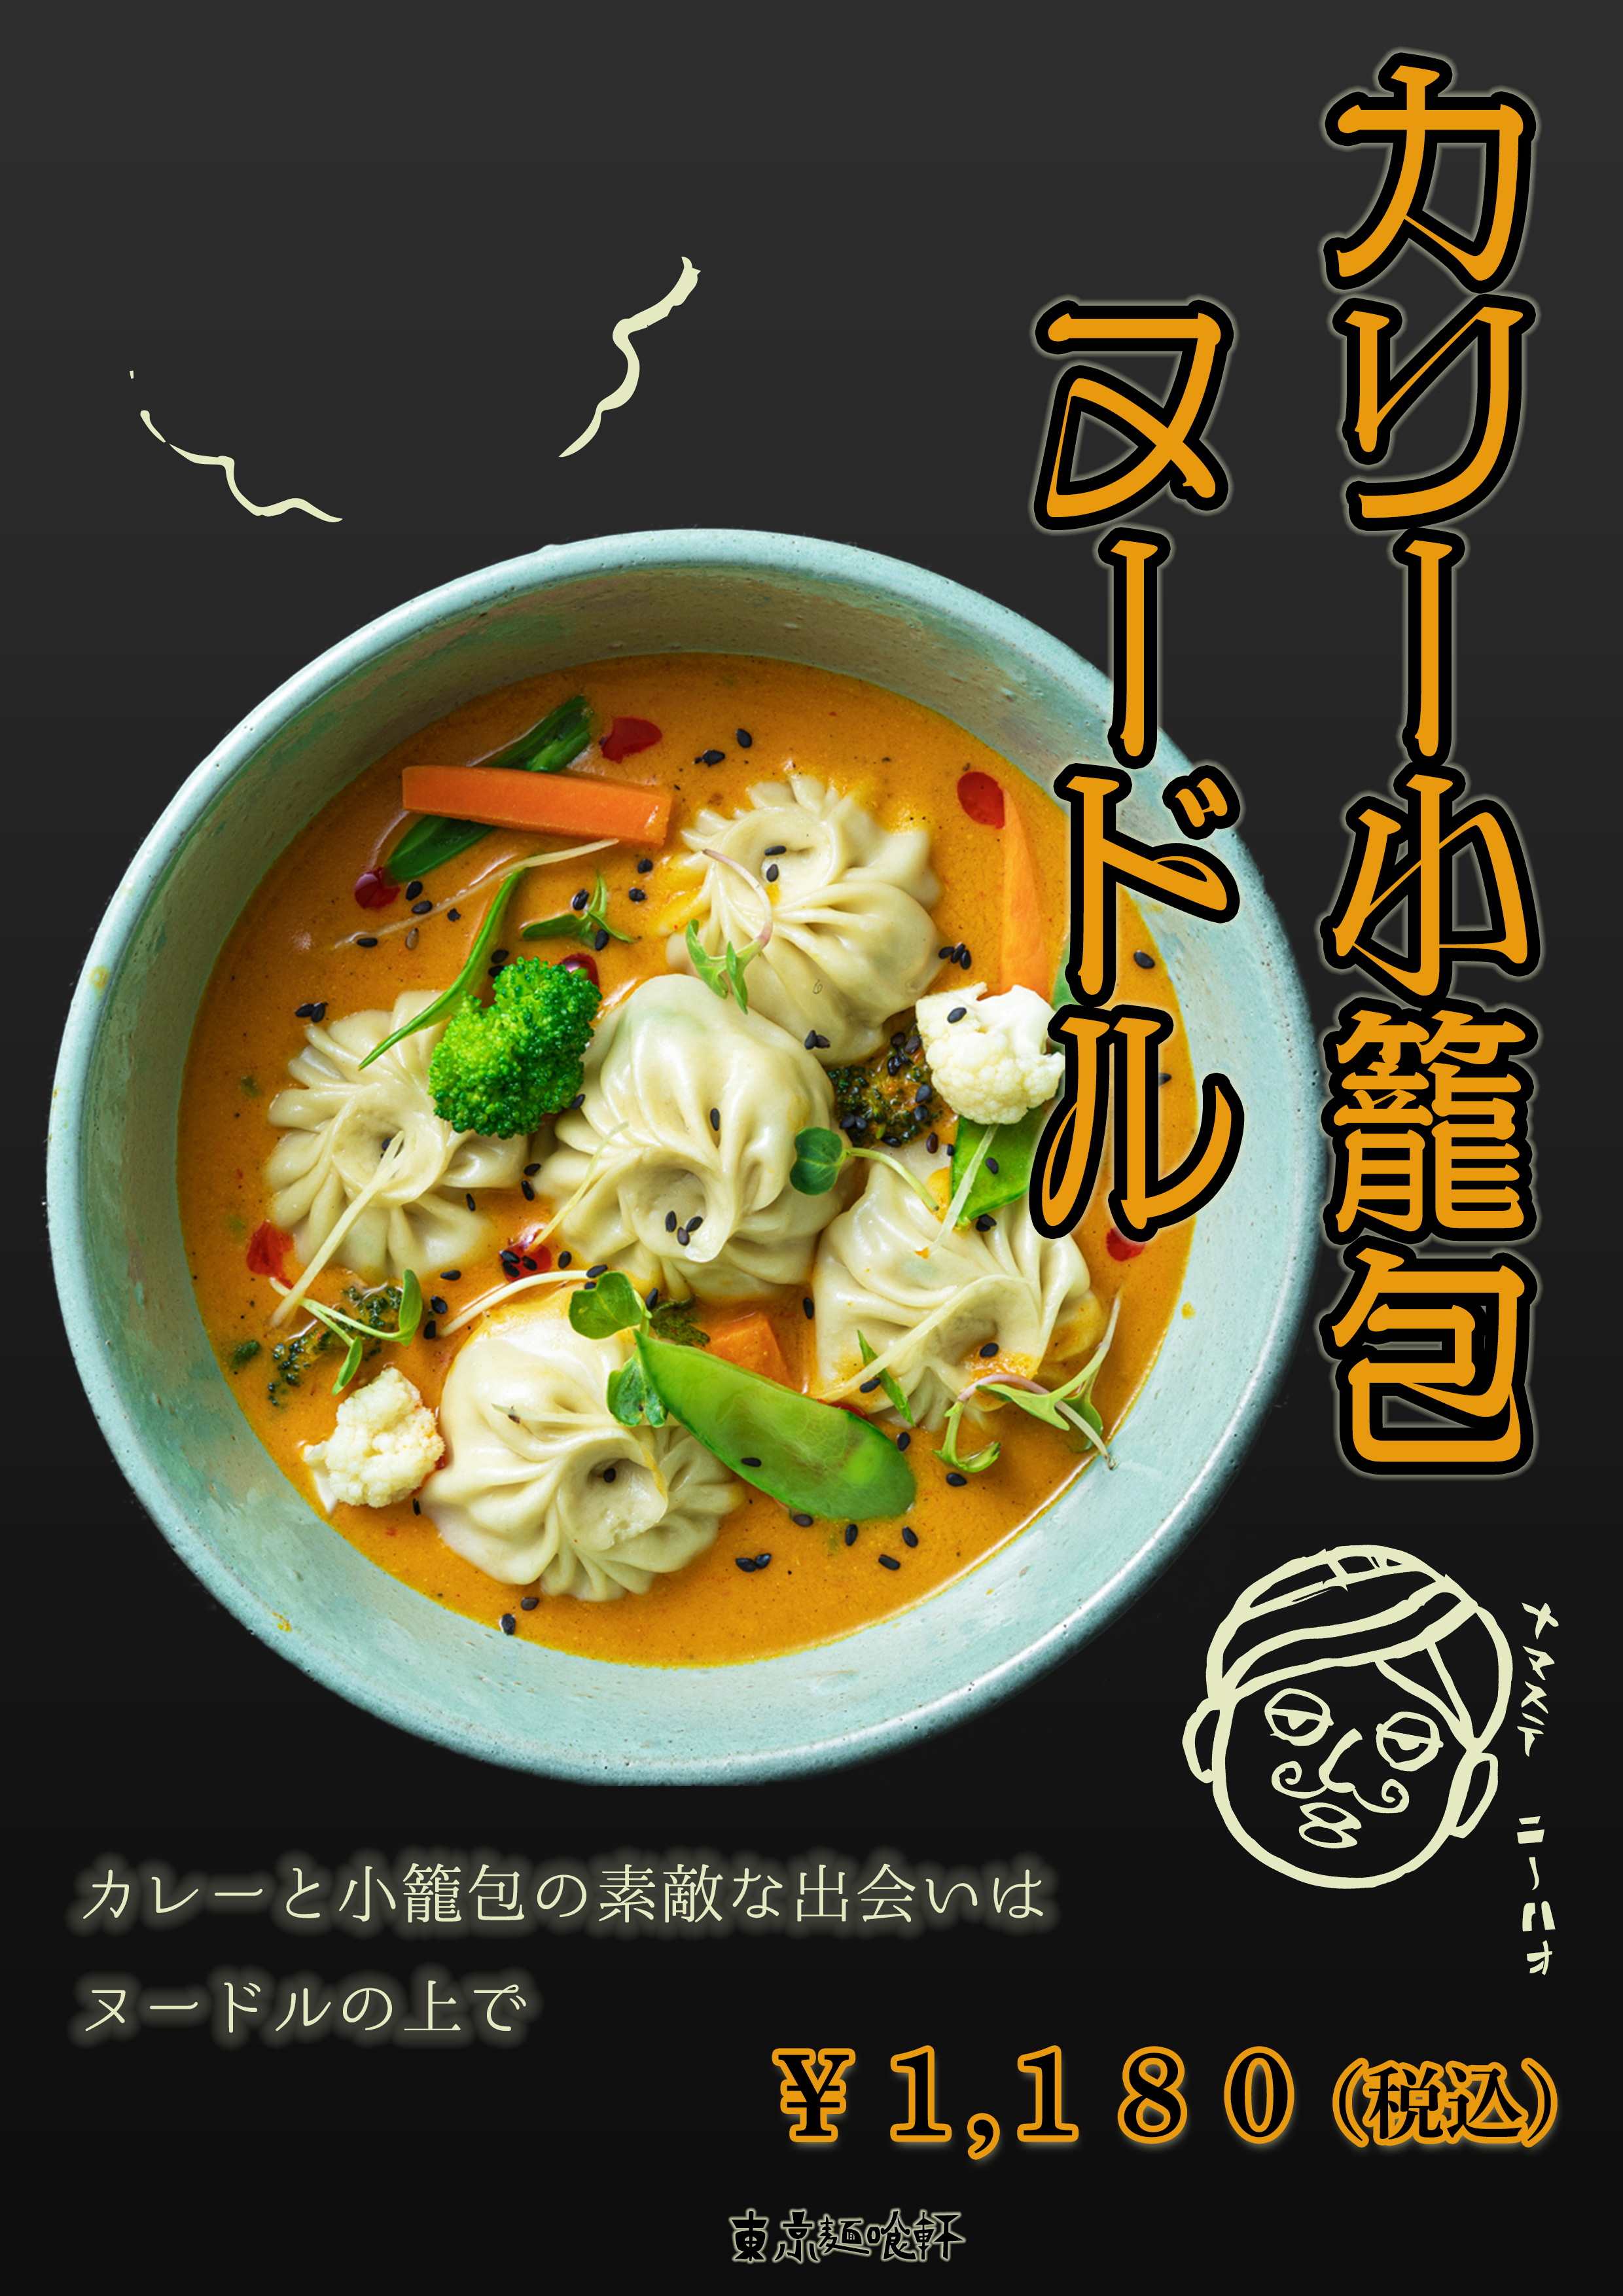 アートワーク-架空curry-noodle